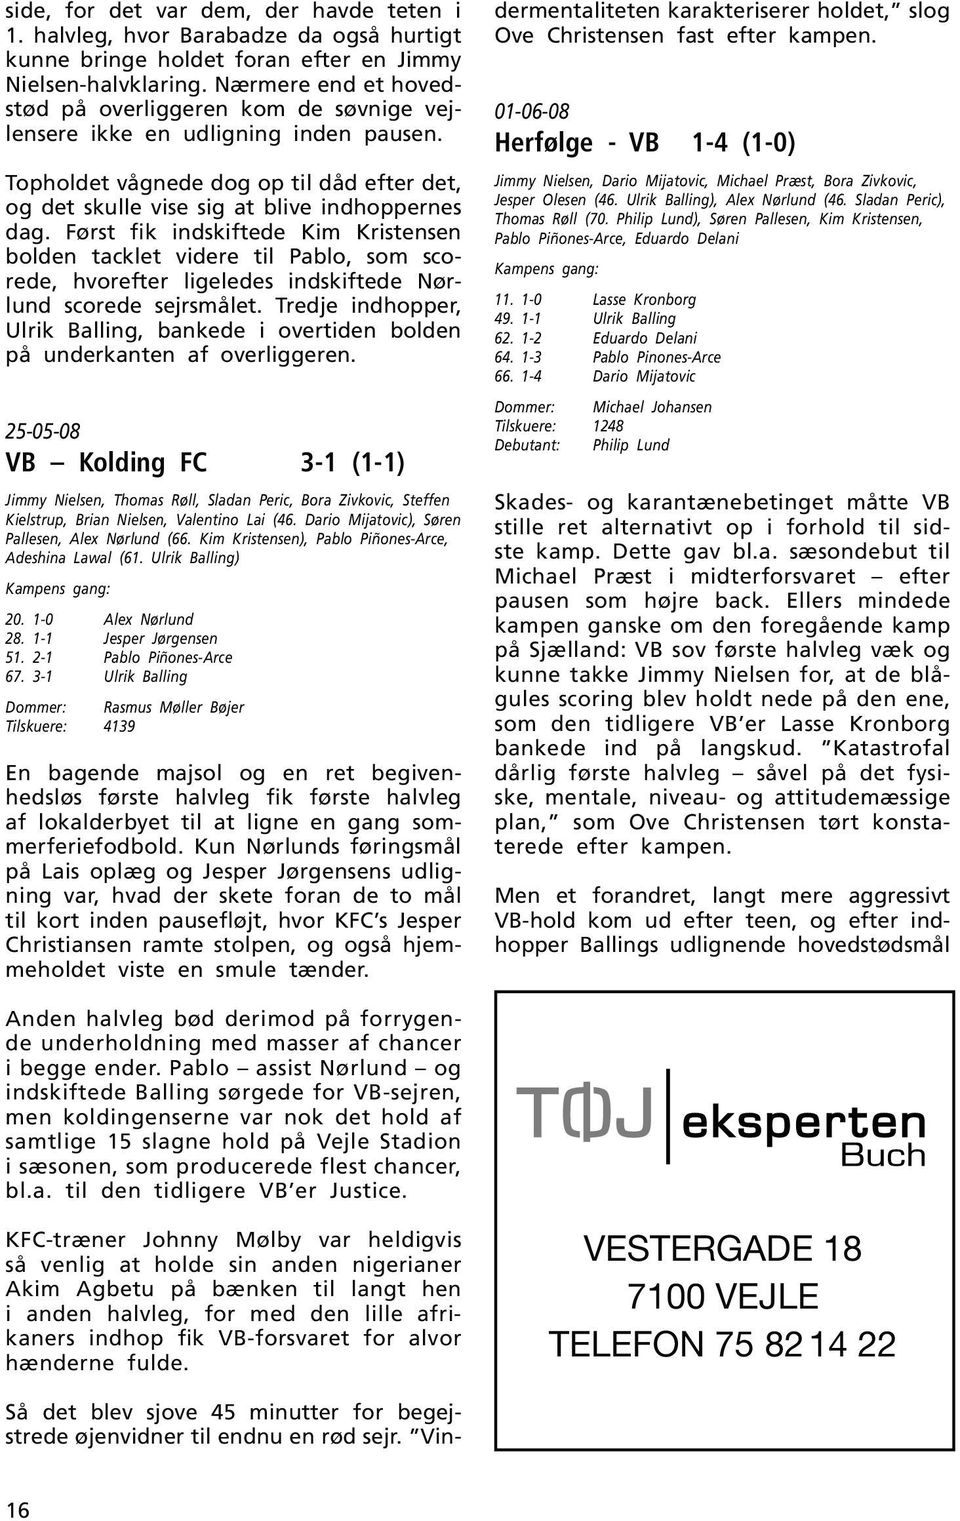 Først fik indskiftede Kim Kristensen bolden tacklet videre til Pablo, som scorede, hvorefter ligeledes indskiftede Nørlund scorede sejrsmålet.